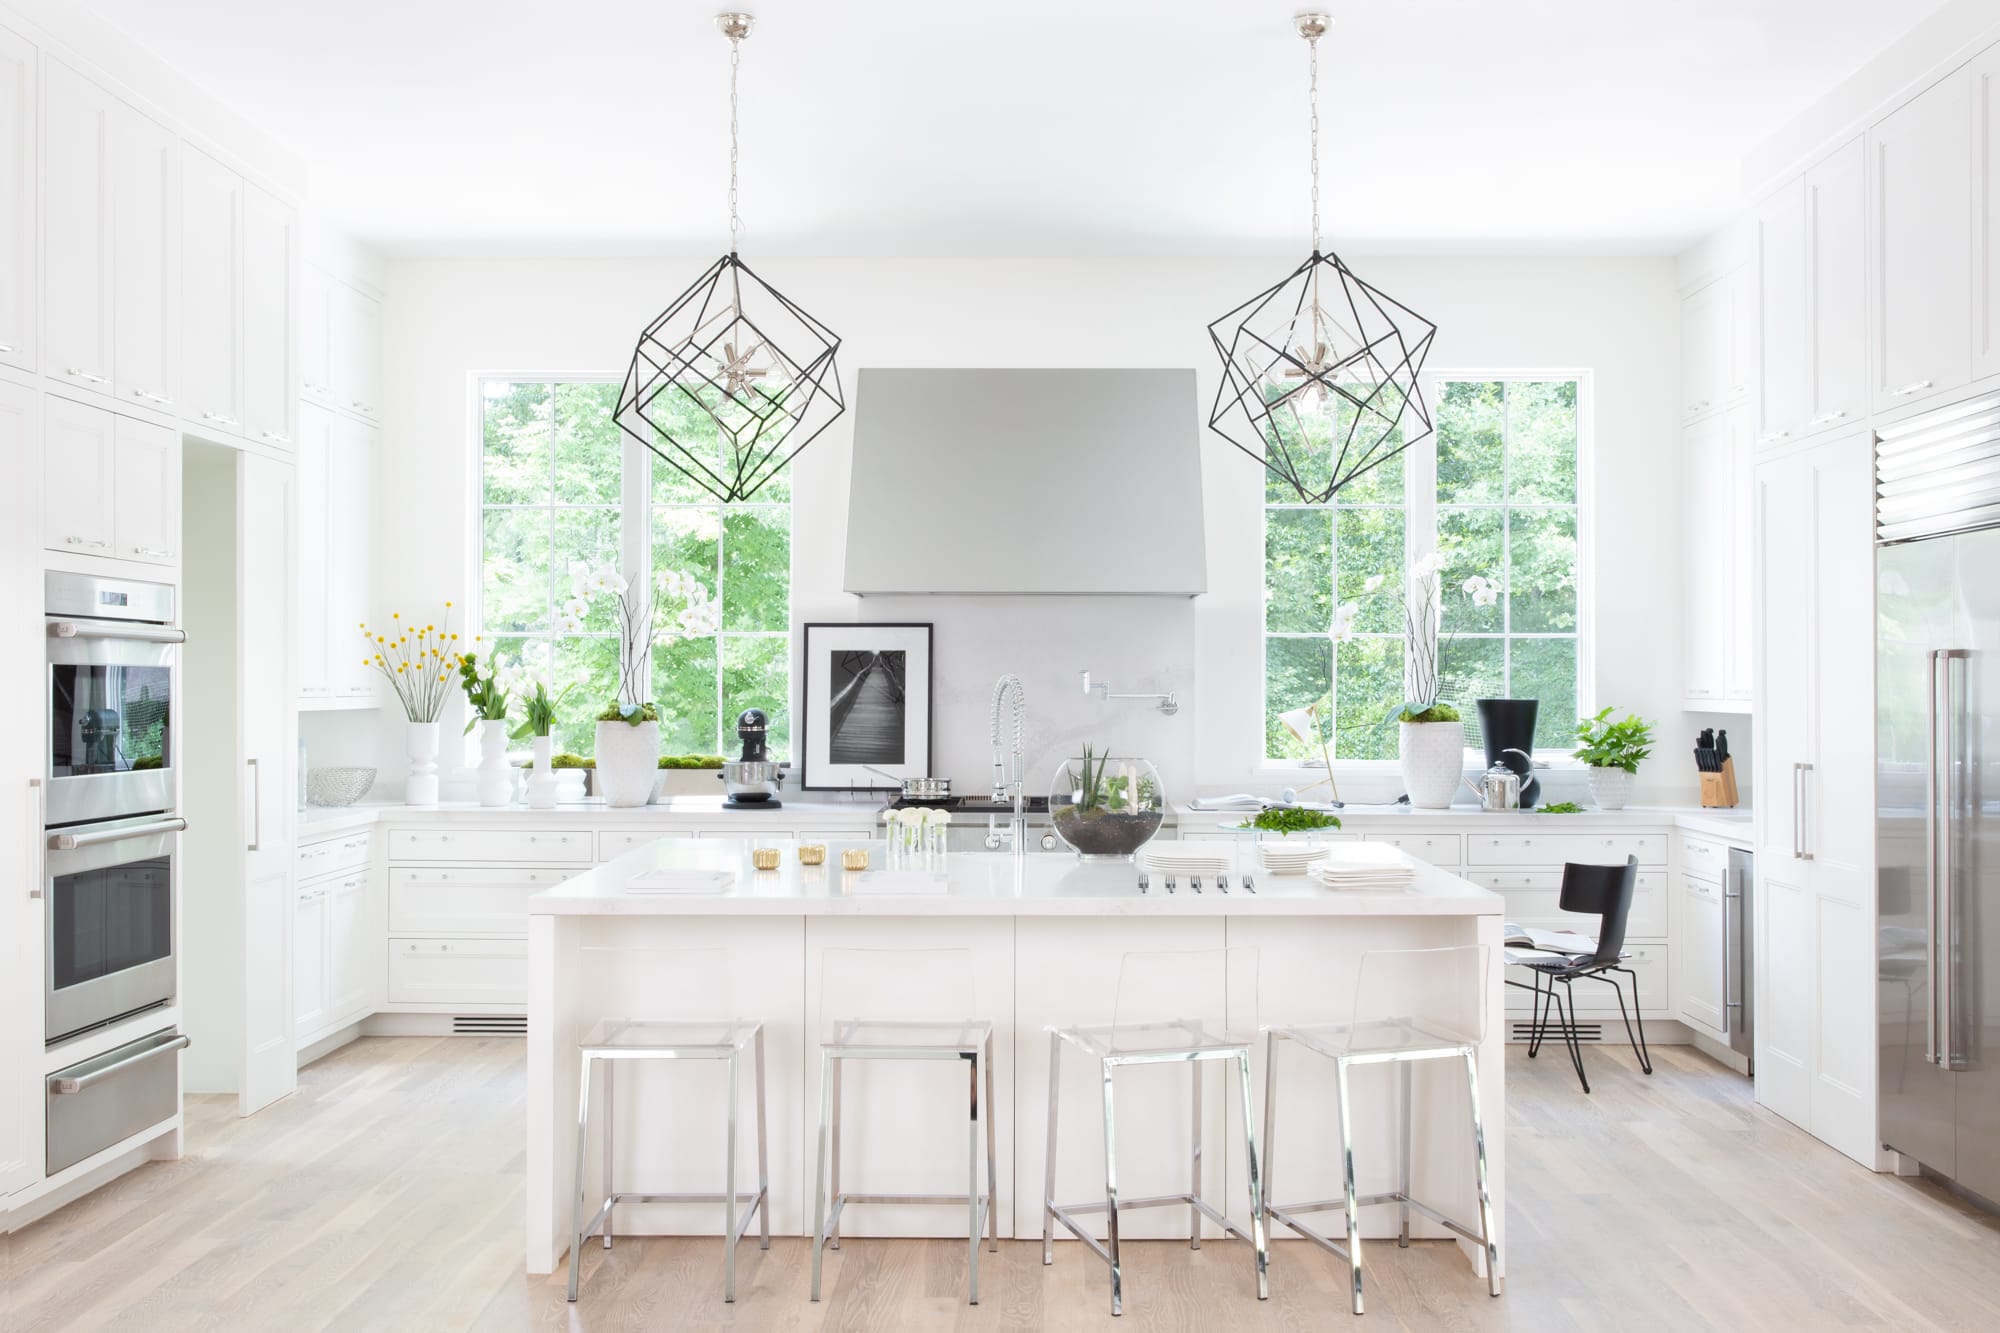 Kitchen lighting suggestions by Decorilla designer Elizabeth L P